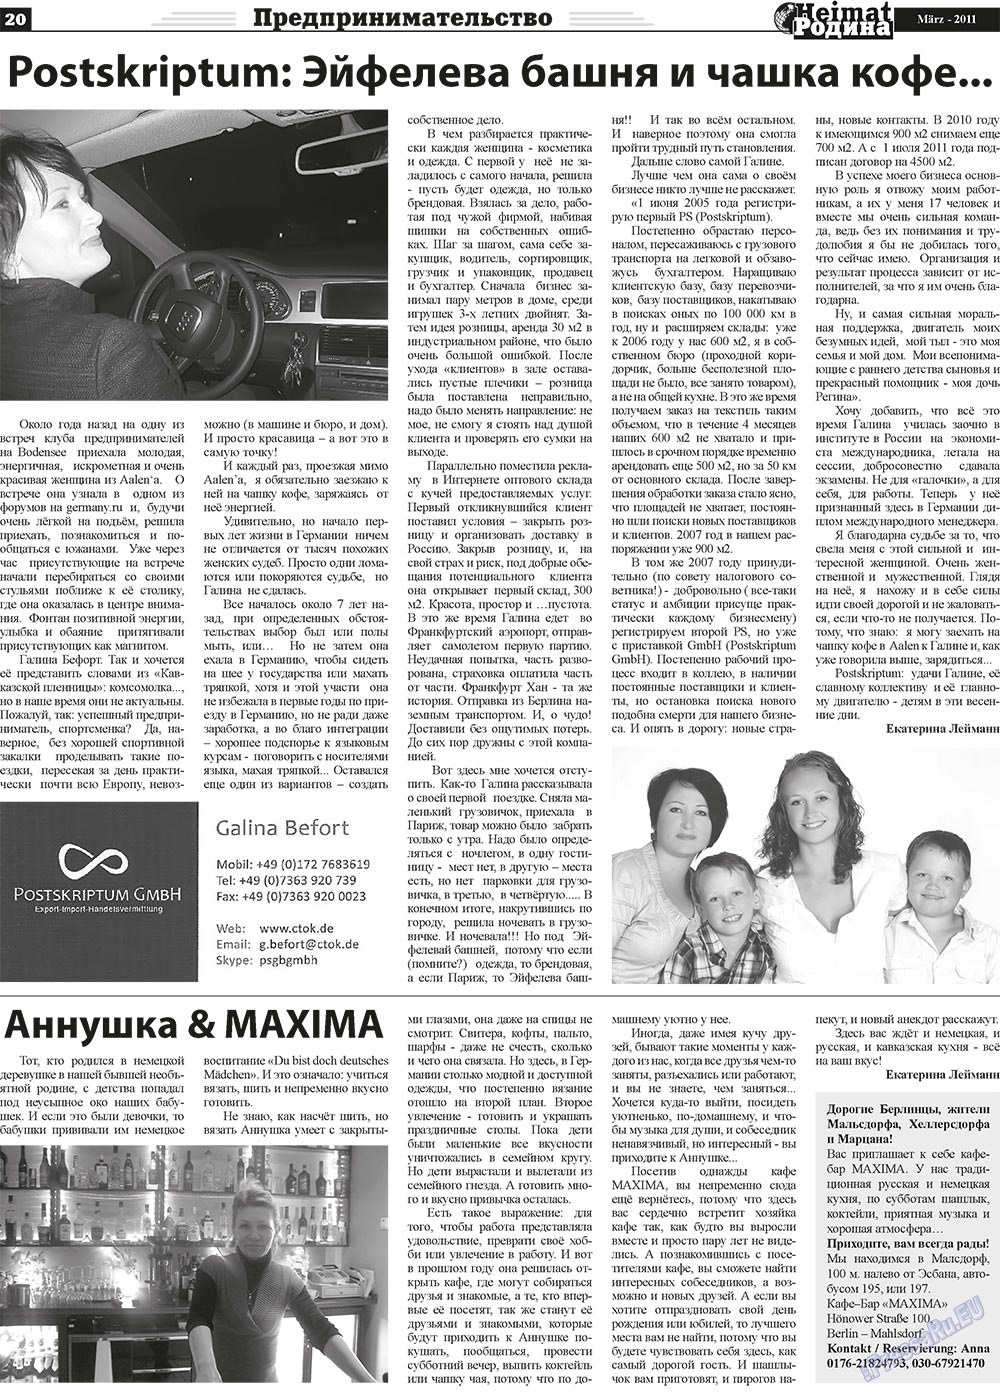 Heimat-Родина (газета). 2011 год, номер 3, стр. 20